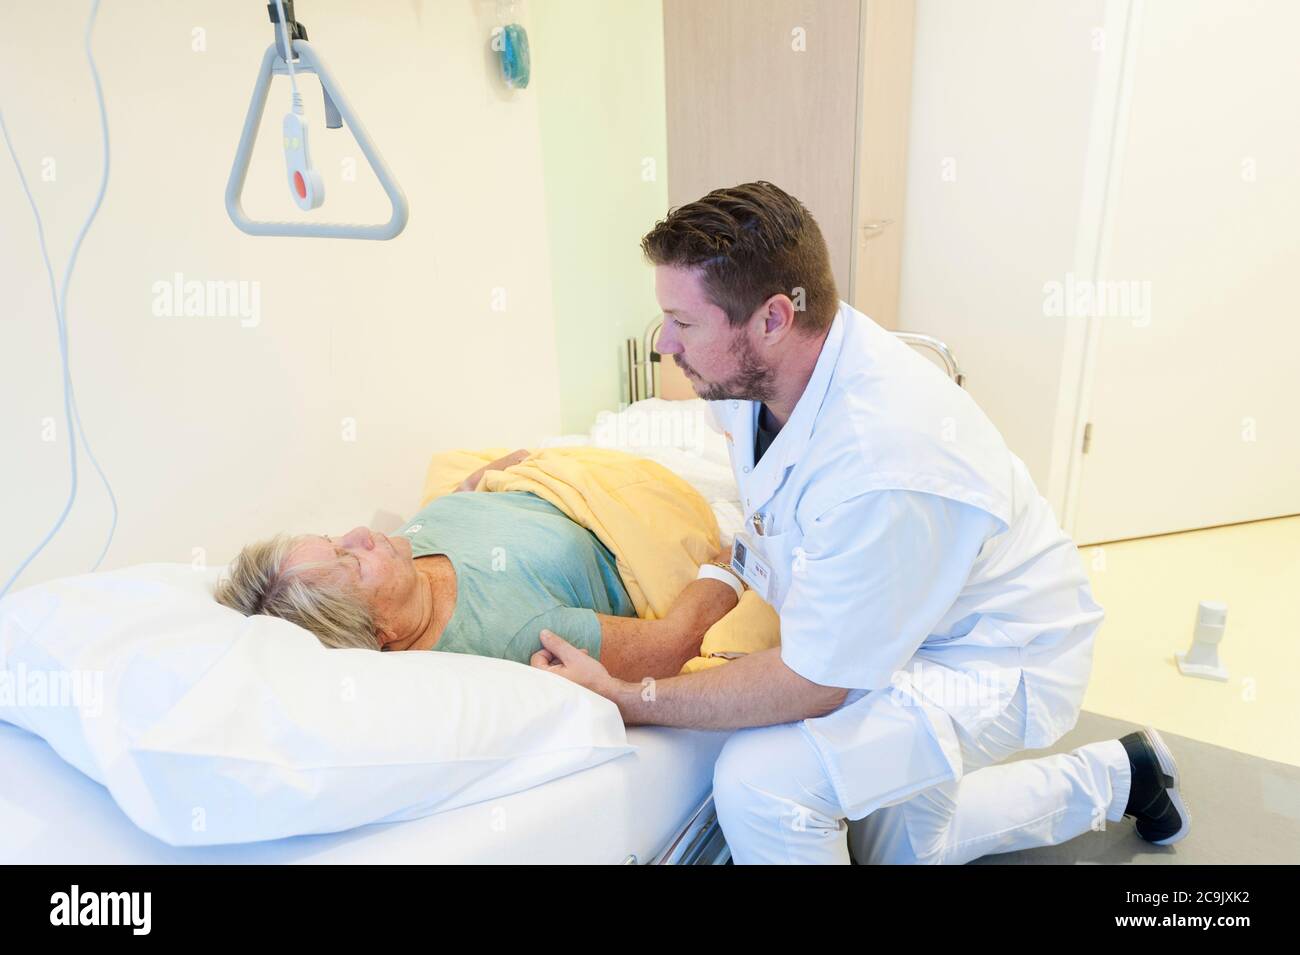 Reparto di ospedale geriatrico. Infermiere che aiuta un paziente confuso nel reparto geriatrico di un ospedale. Foto Stock